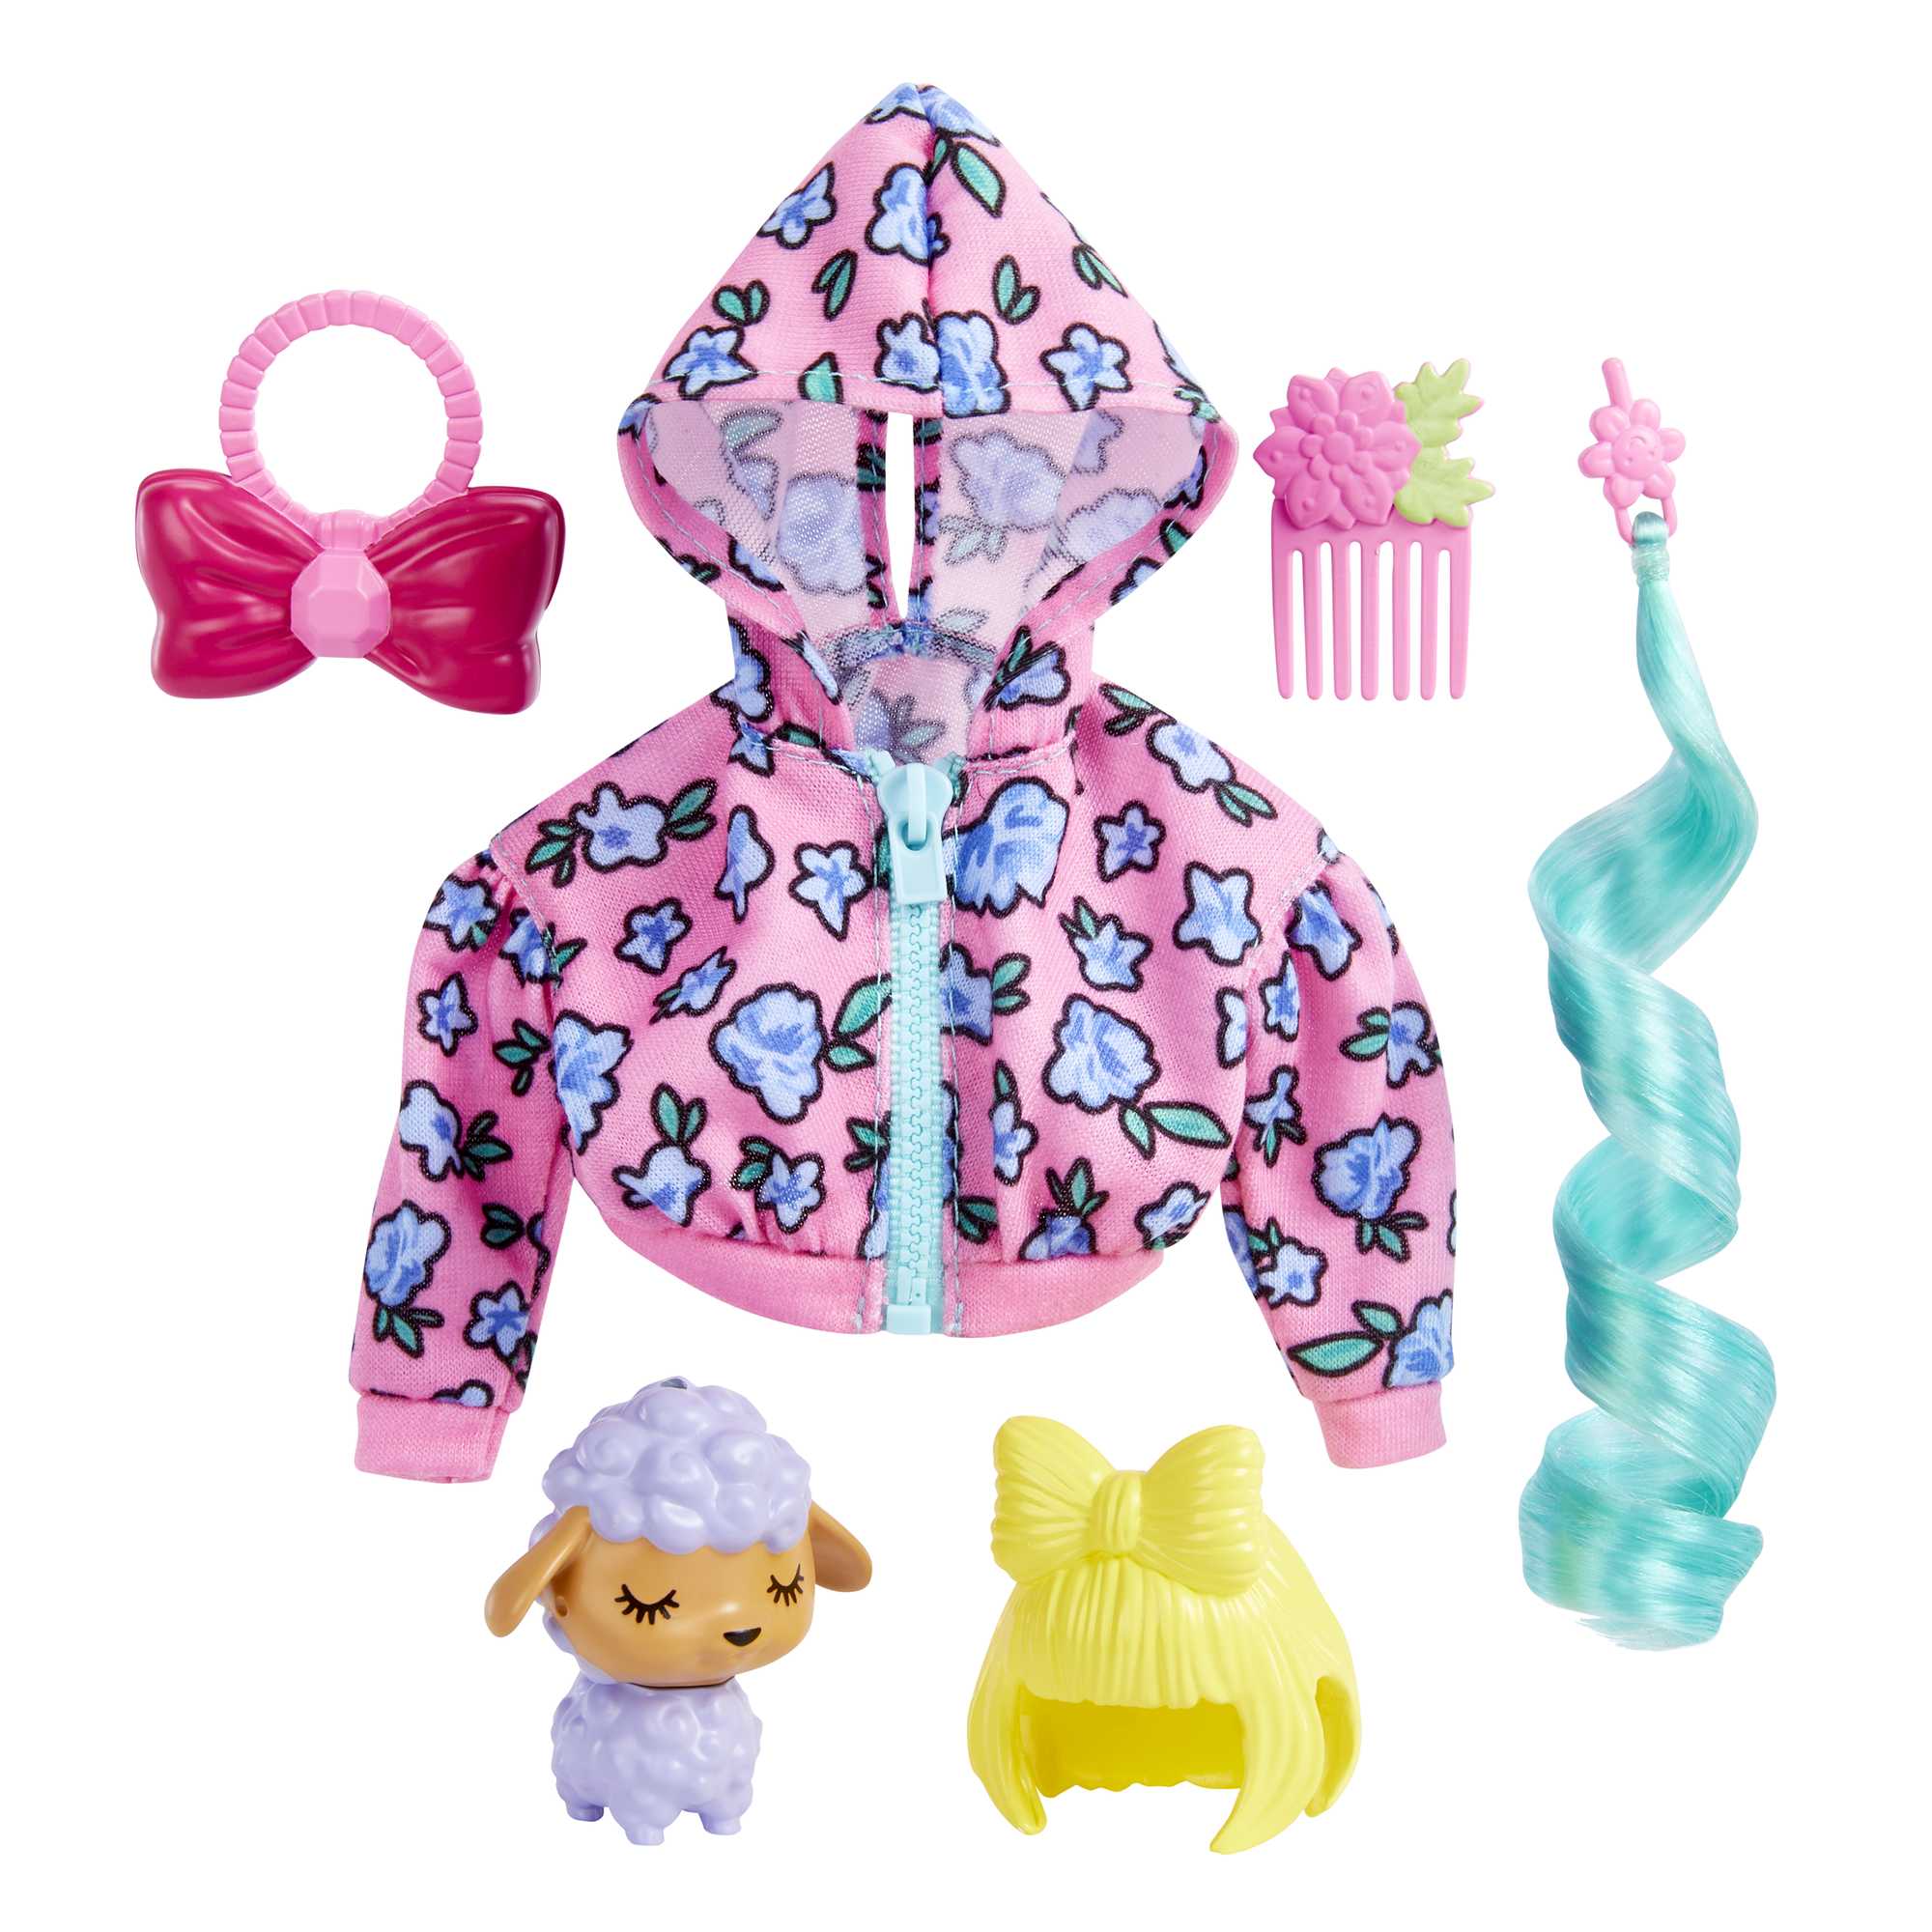 Barbie Extra Fashions HDJ39 | Mattel